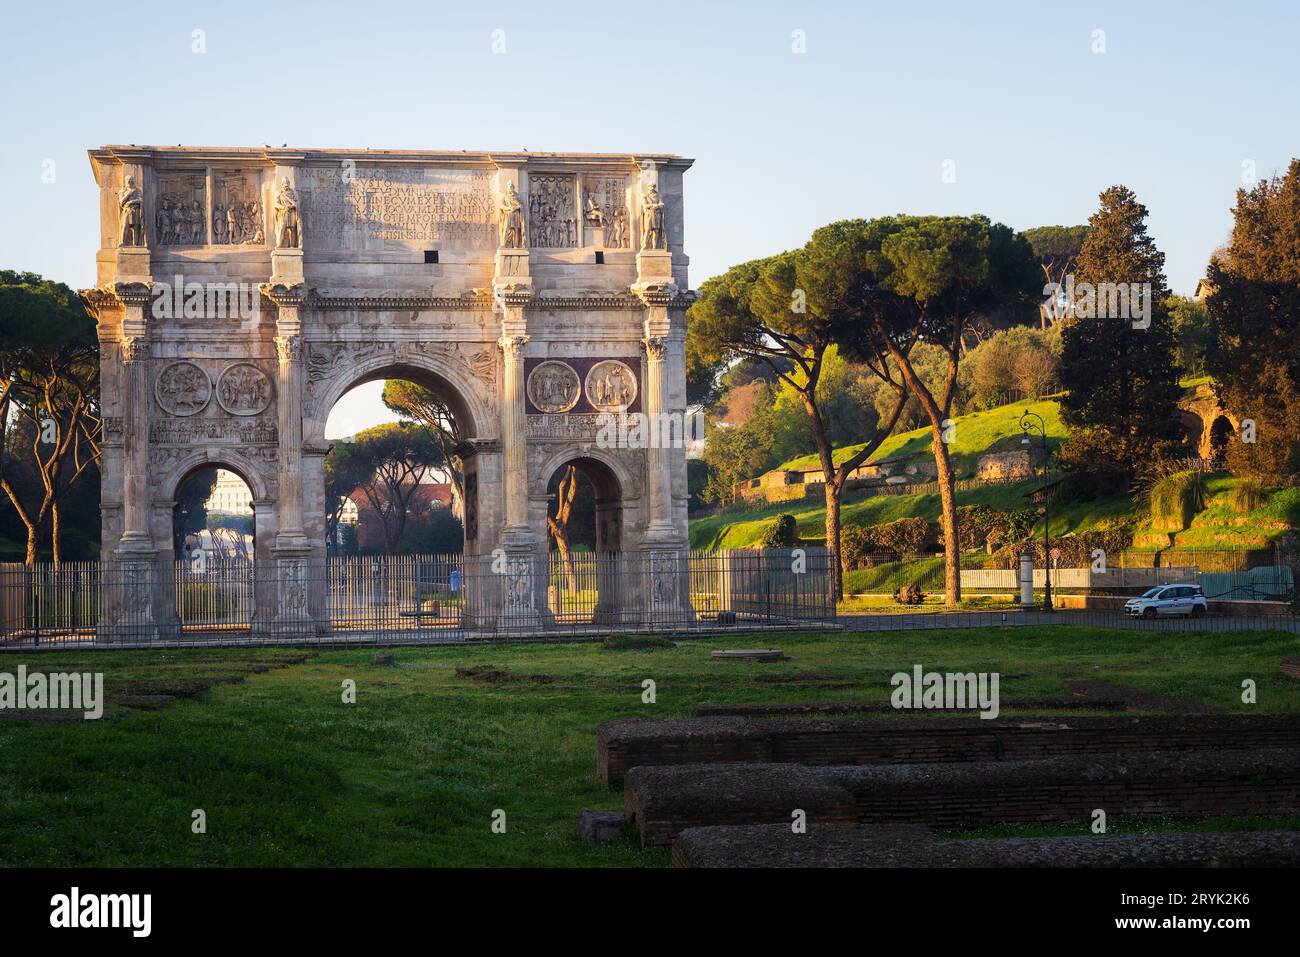 Arco Di Costantino in Rome, Arch of Constantine Stock Photo